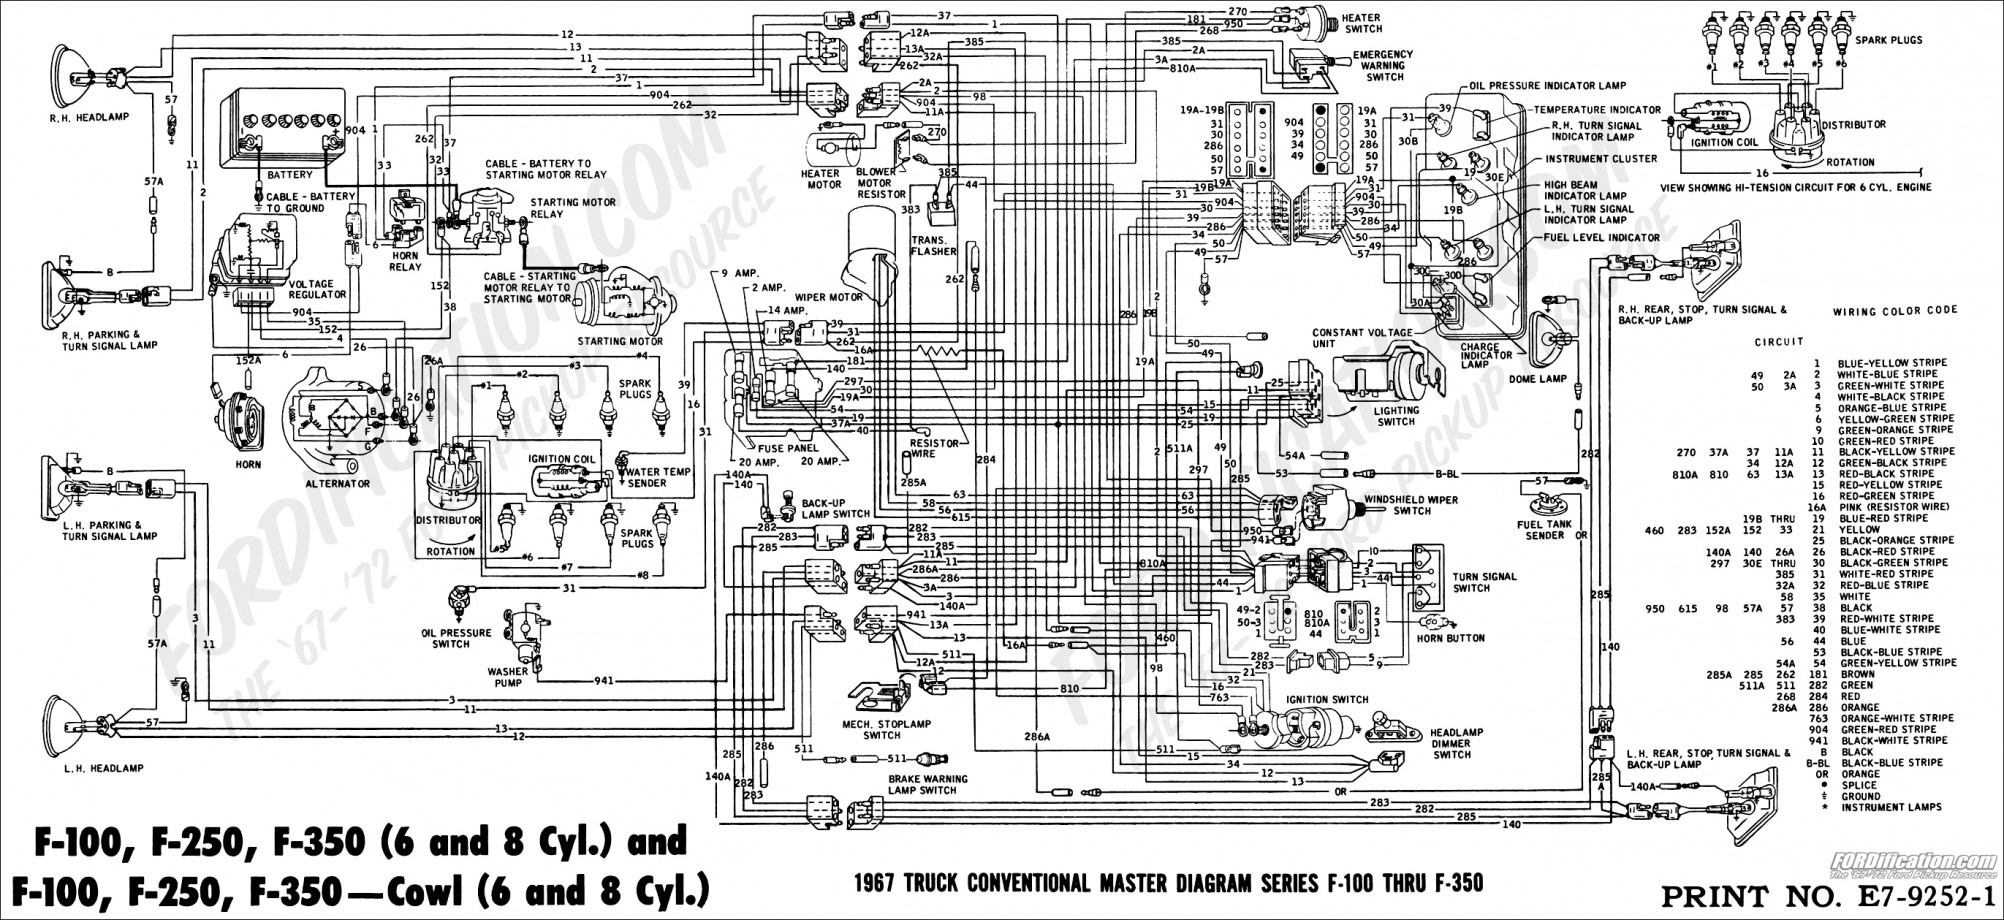 Duraspark Wiring Schematic | Wiring Diagram - Ford Duraspark Wiring Diagram